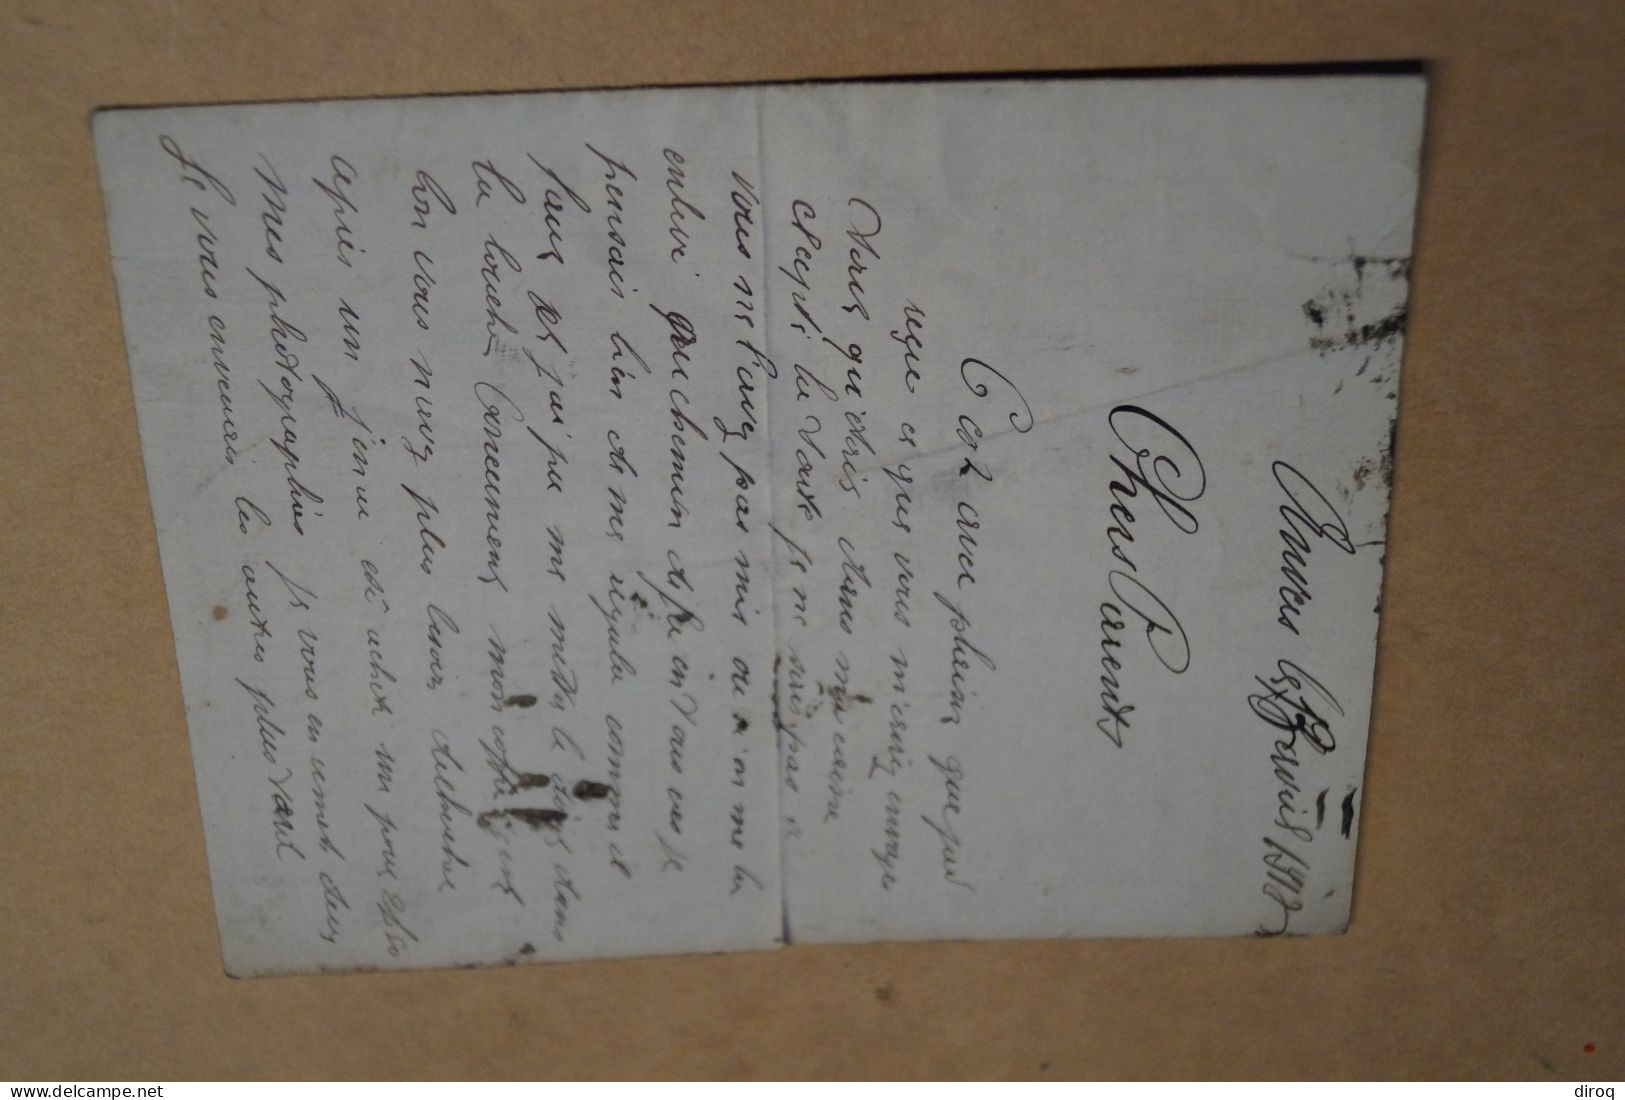 Guerre 14-18,lettre D'un Poilu A Ses Parents En 1914,maniscrit Original Pour Collection - 1914-18